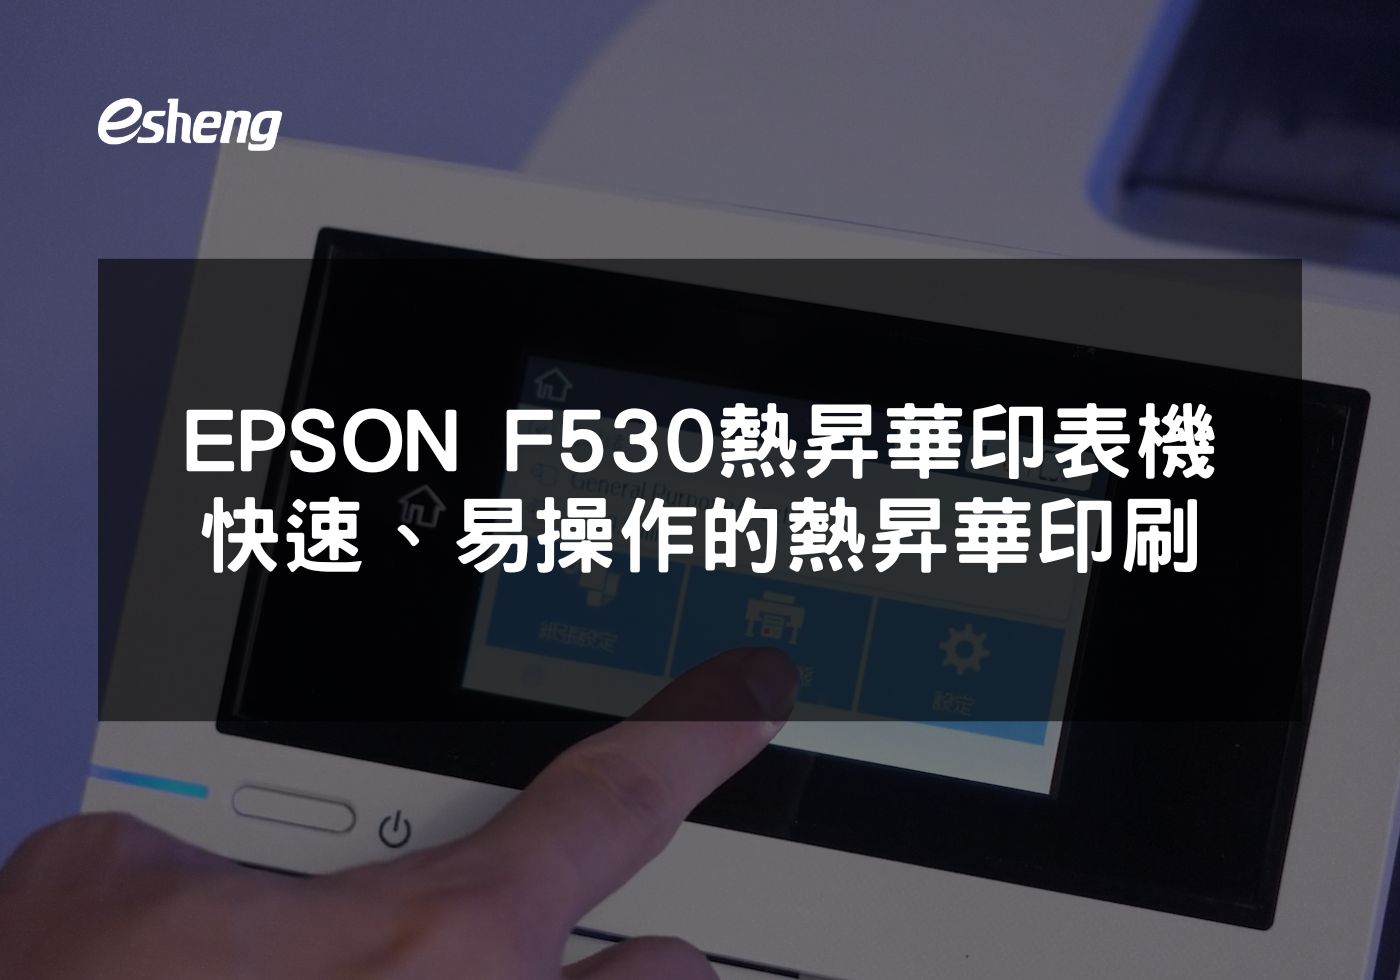 EPSON F530熱昇華印表機 高品質、快速、易操作的熱昇華印刷解決方案